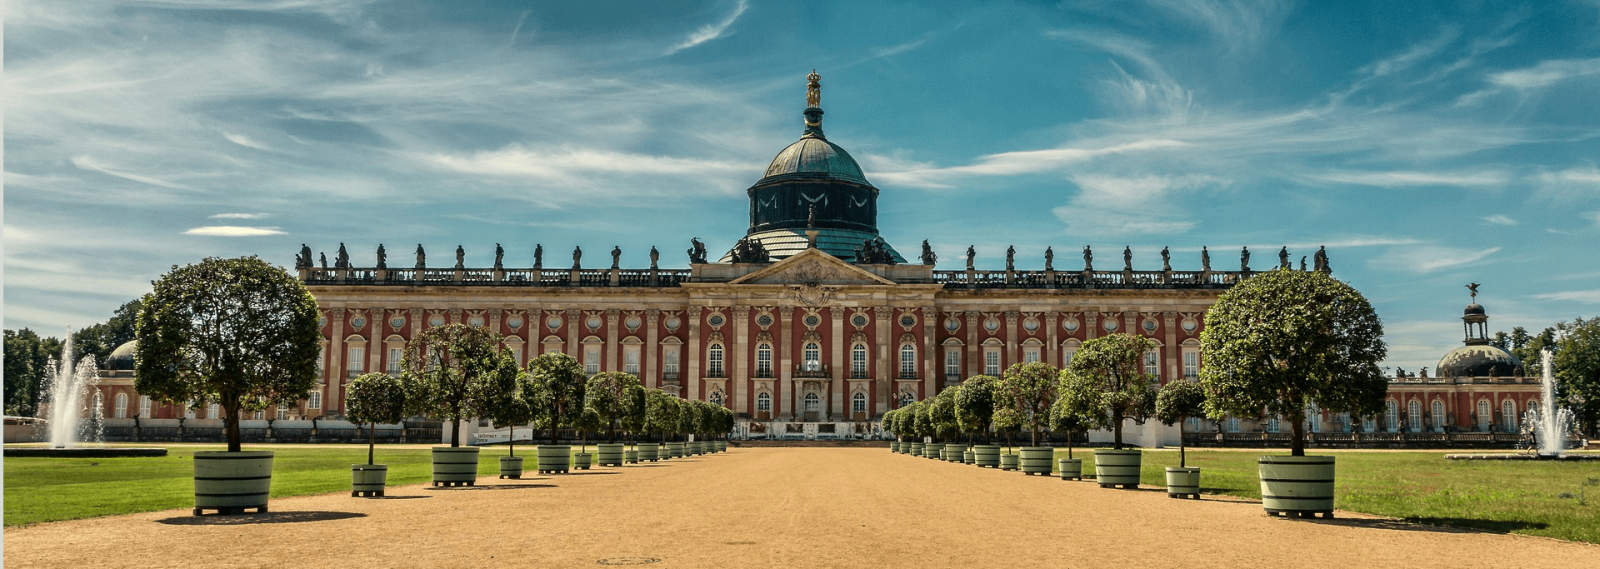 Küchen Potsdam (Quelle: Pixabay)